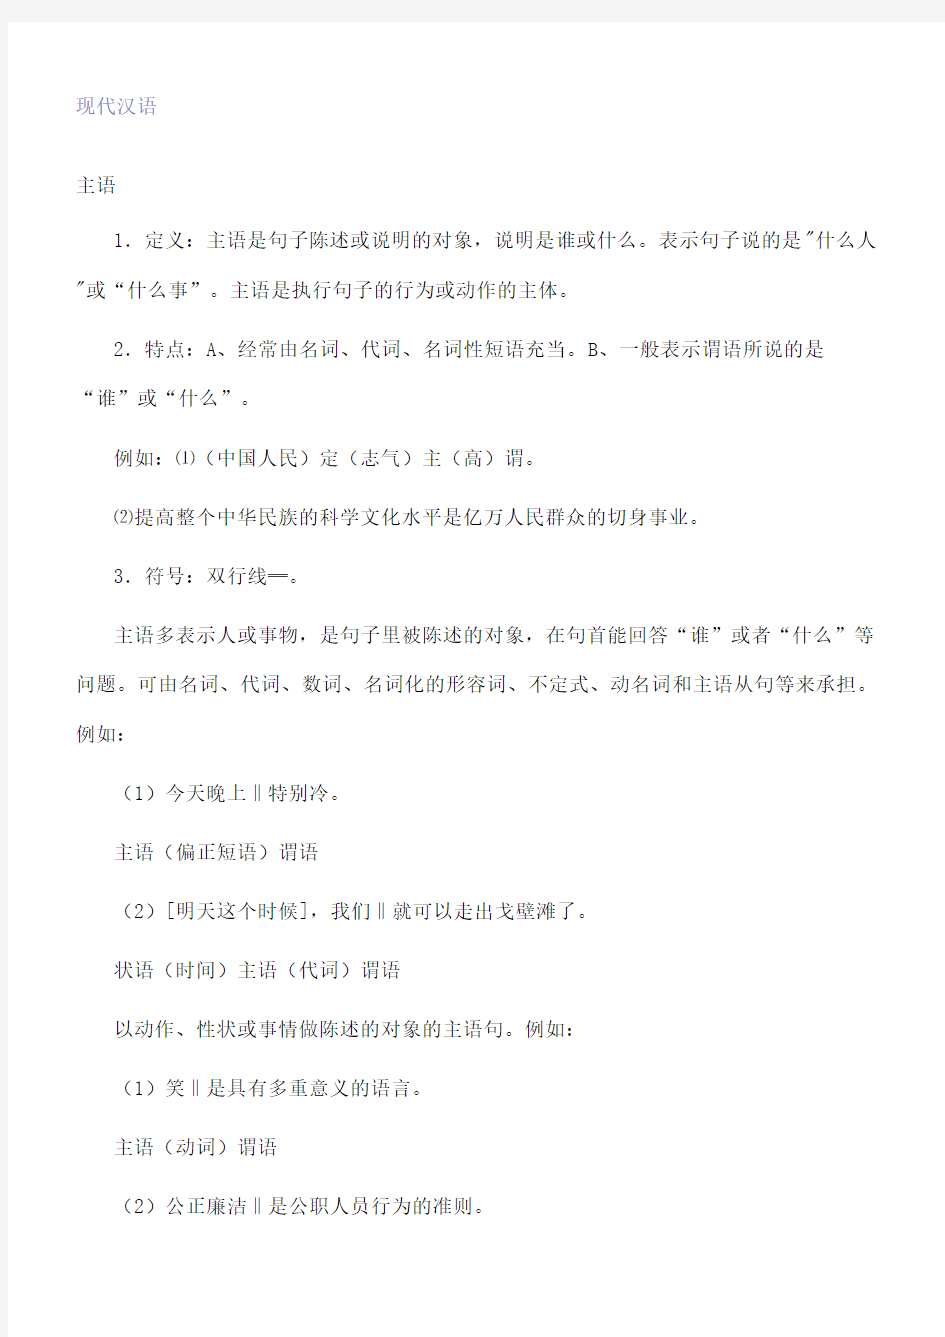 现代汉语句子成分(终审稿)